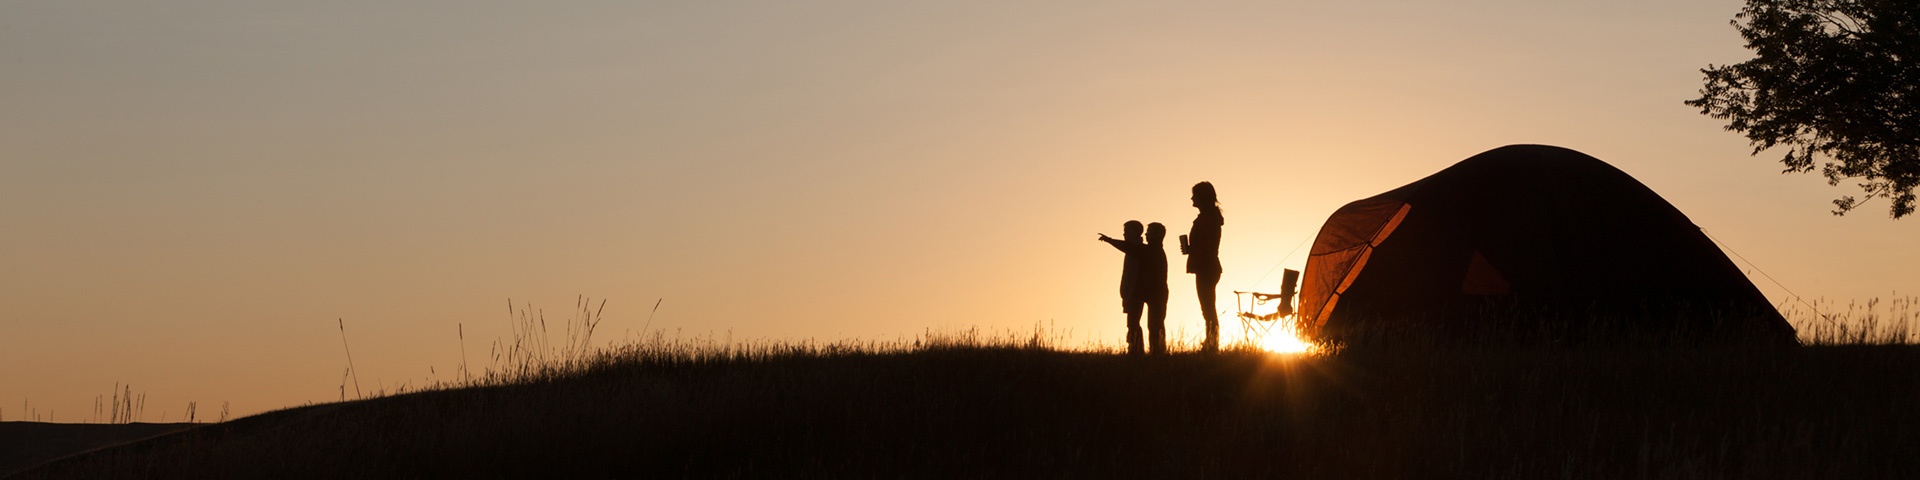 Une petite famille en camping, observe le coucher de soleil.